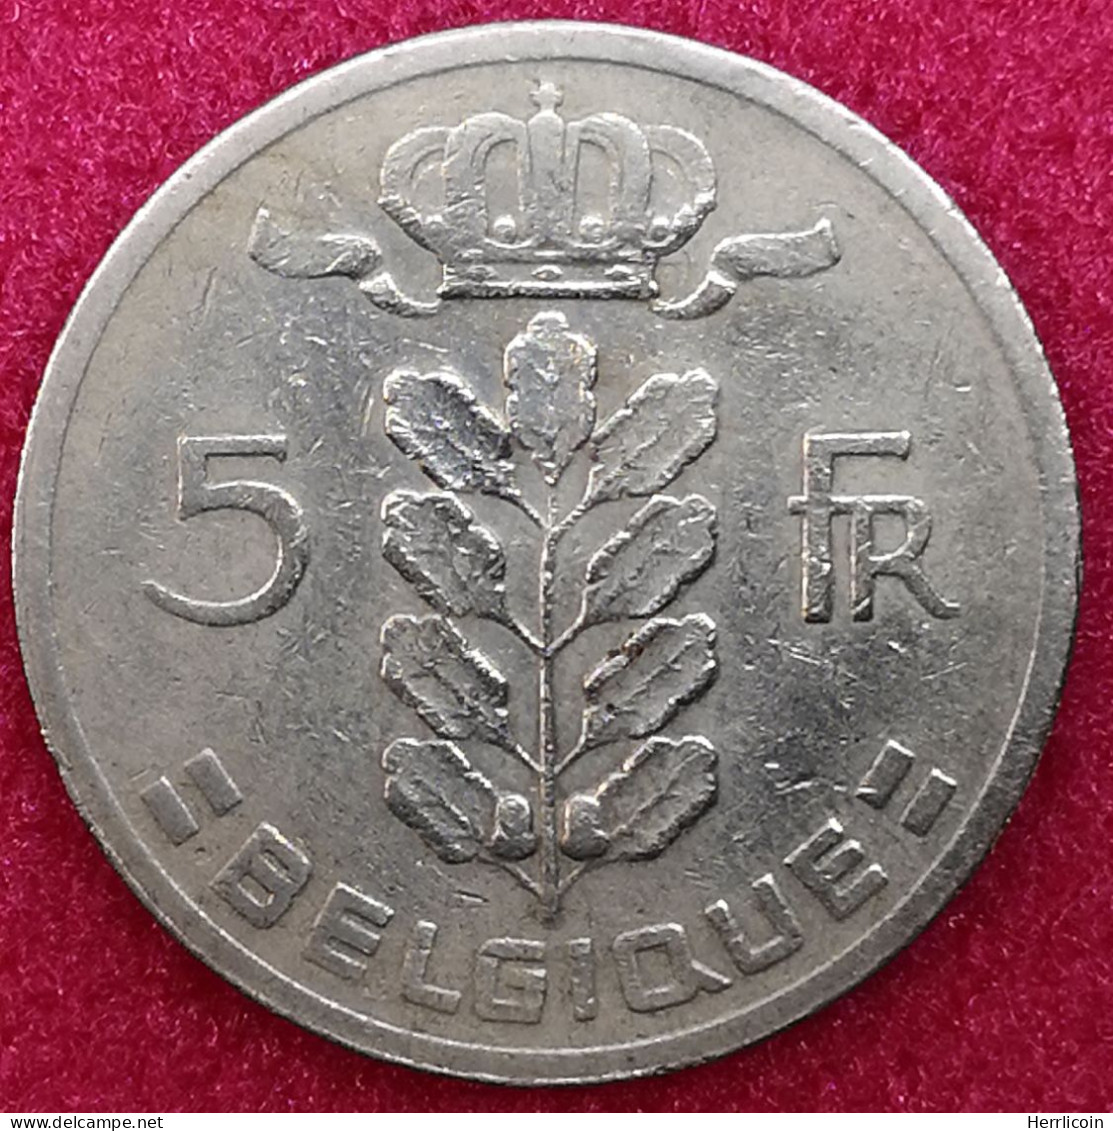 Monnaie Belgique - 1963 - 5 Francs - Type Cérès En Français - 5 Frank